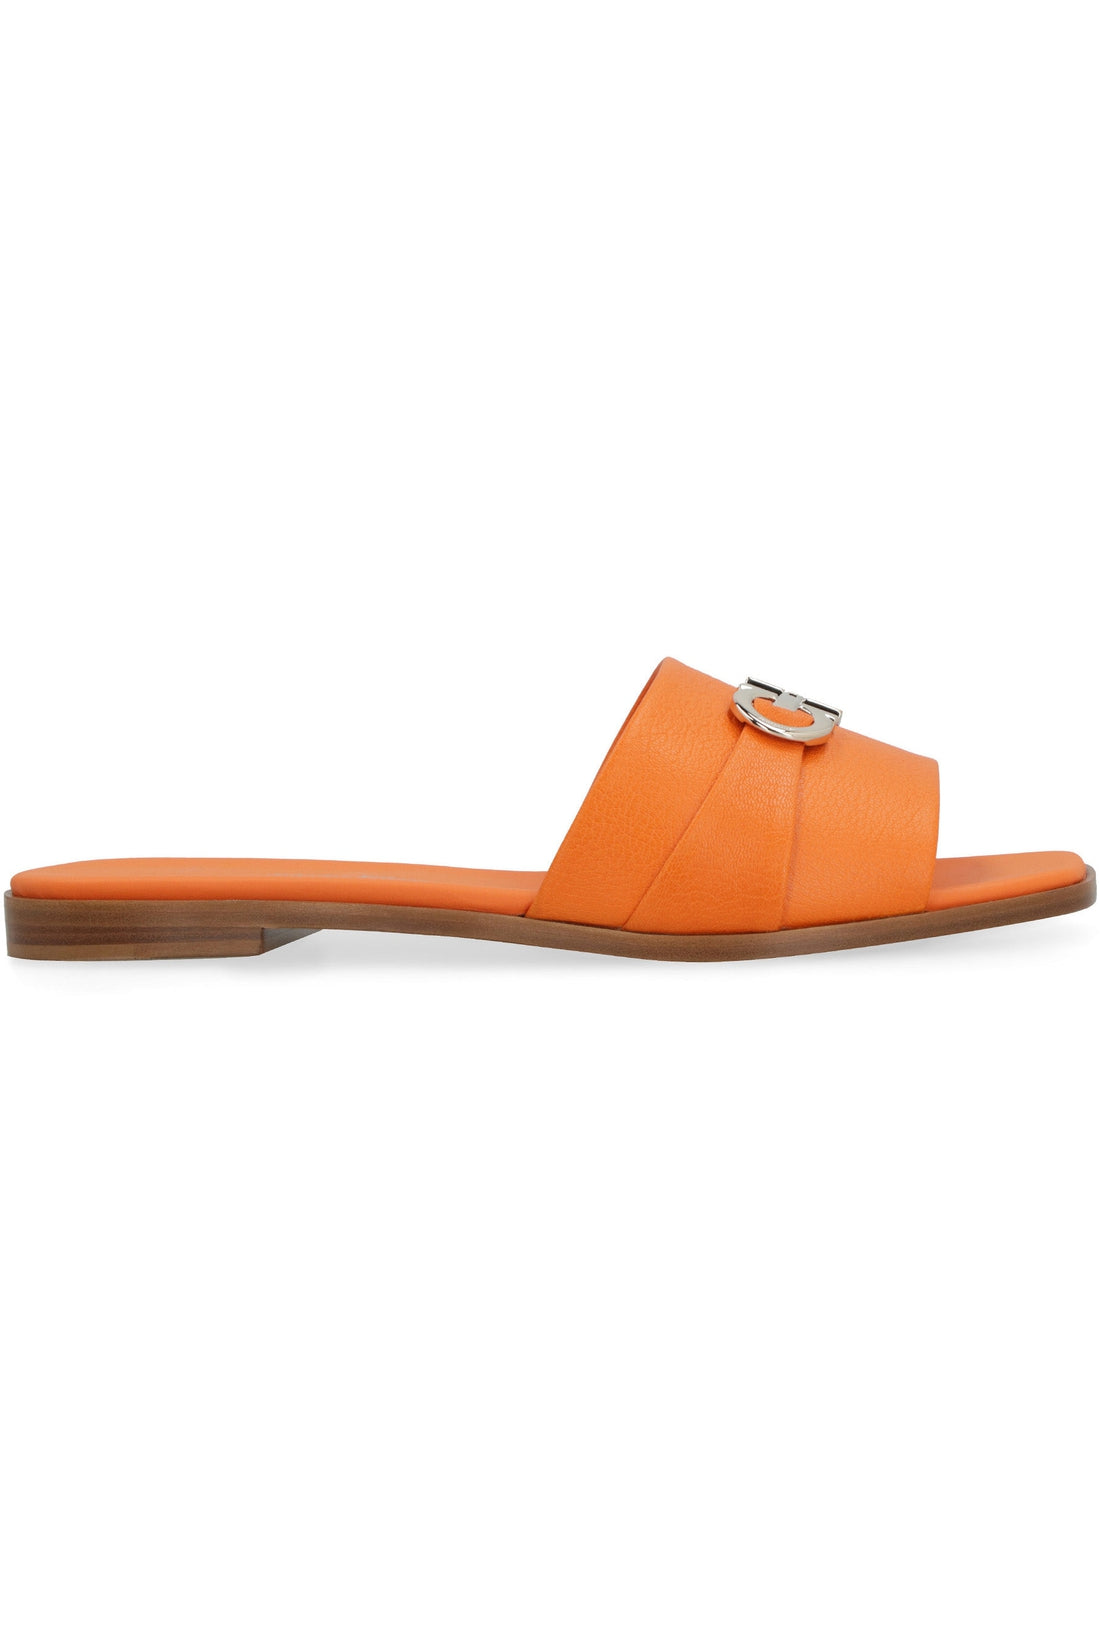 Salvatore Ferragamo-OUTLET-SALE-Leather flat sandals-ARCHIVIST